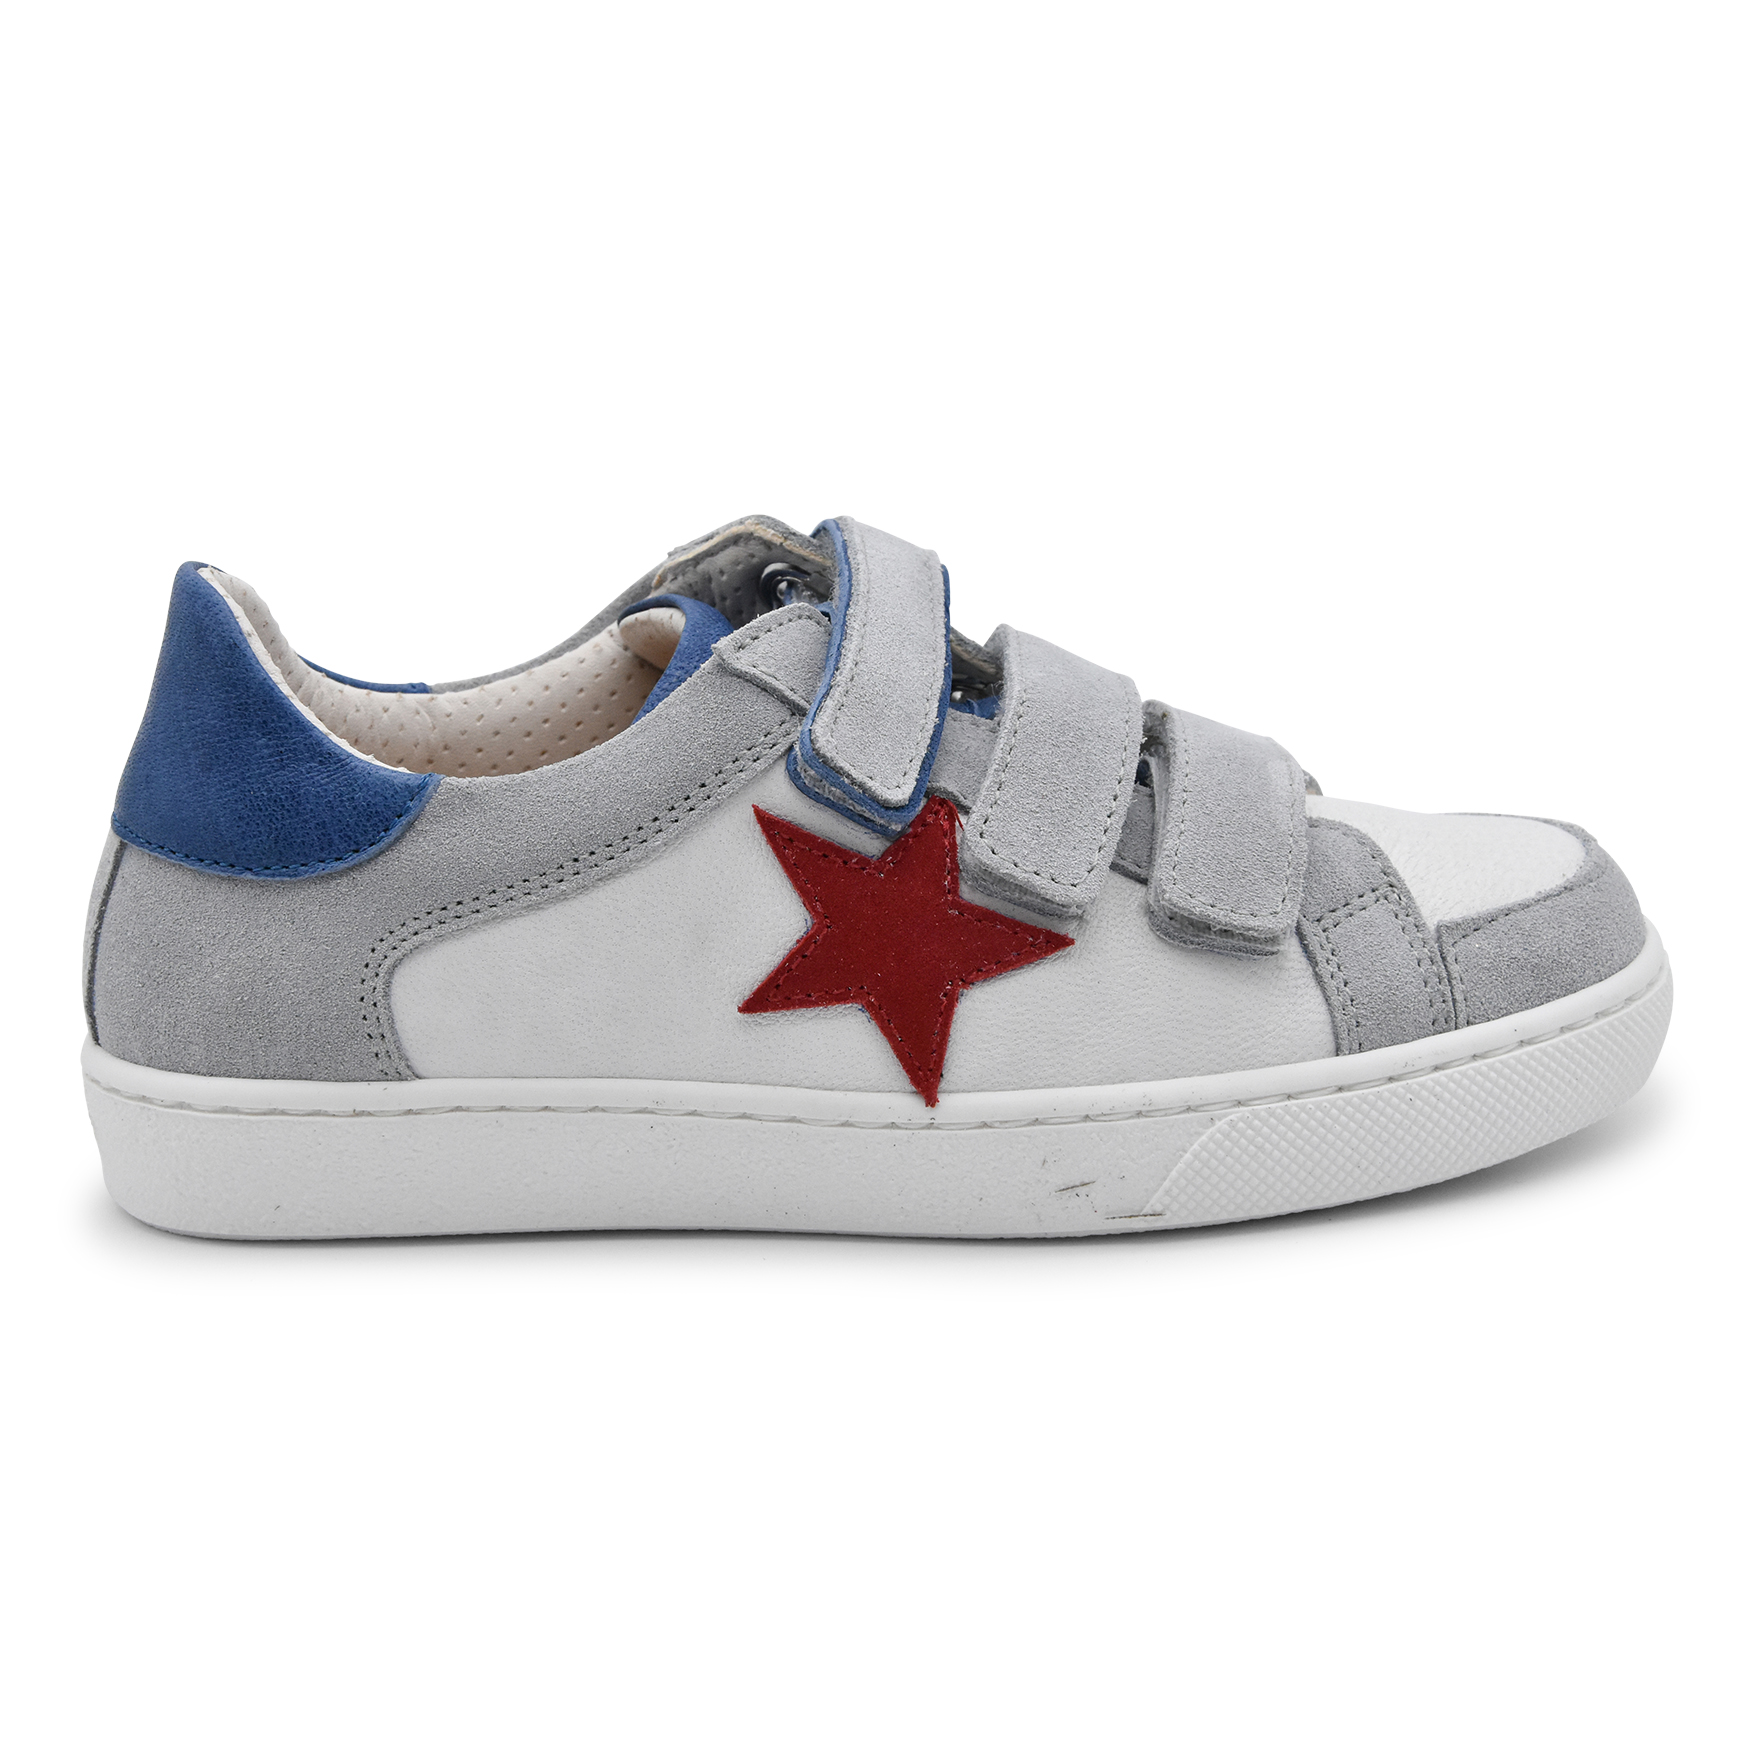 Zecchino D'oro, sneakers, made in Italy, bianco, grigio, azzurro, stella rossa, nabuk, pelle, velcro, profilo